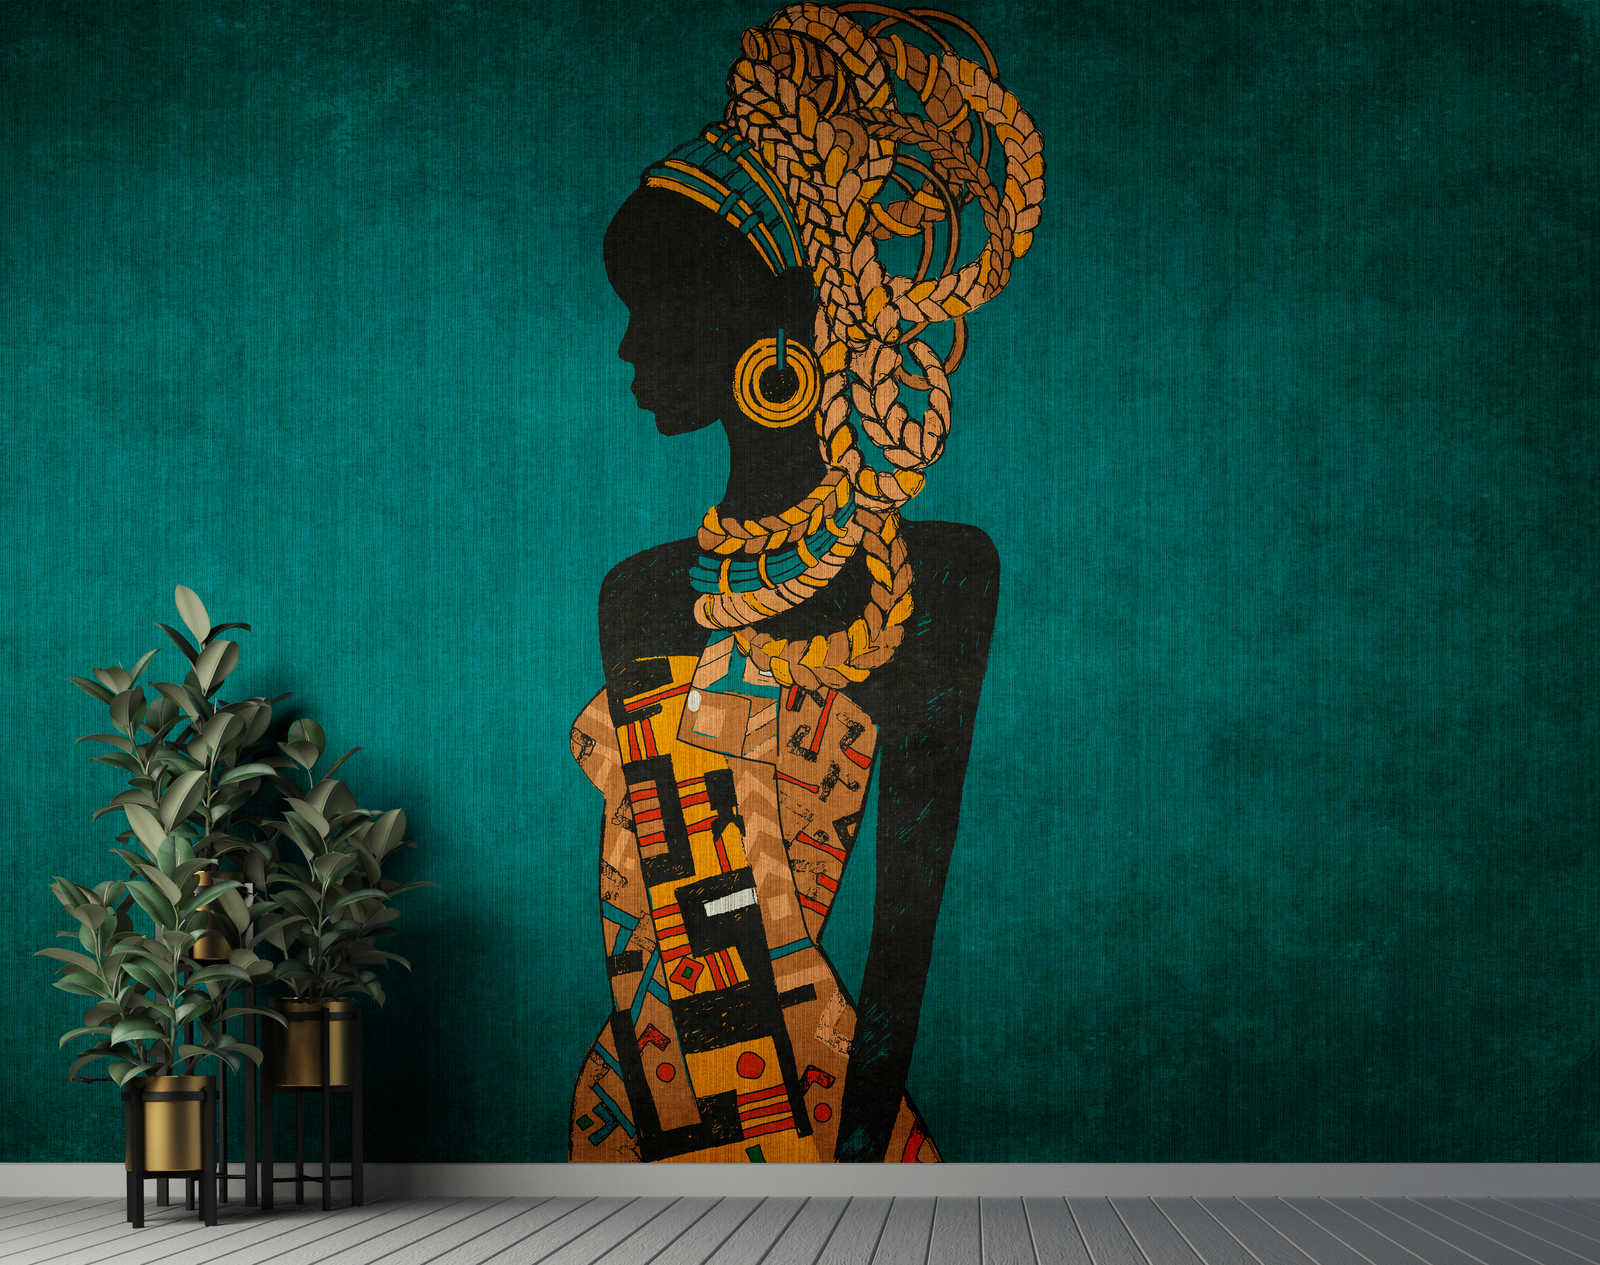             Nairobi 2 - Papel pintado de estilo africano Petrol con Sillouette de mujer
        